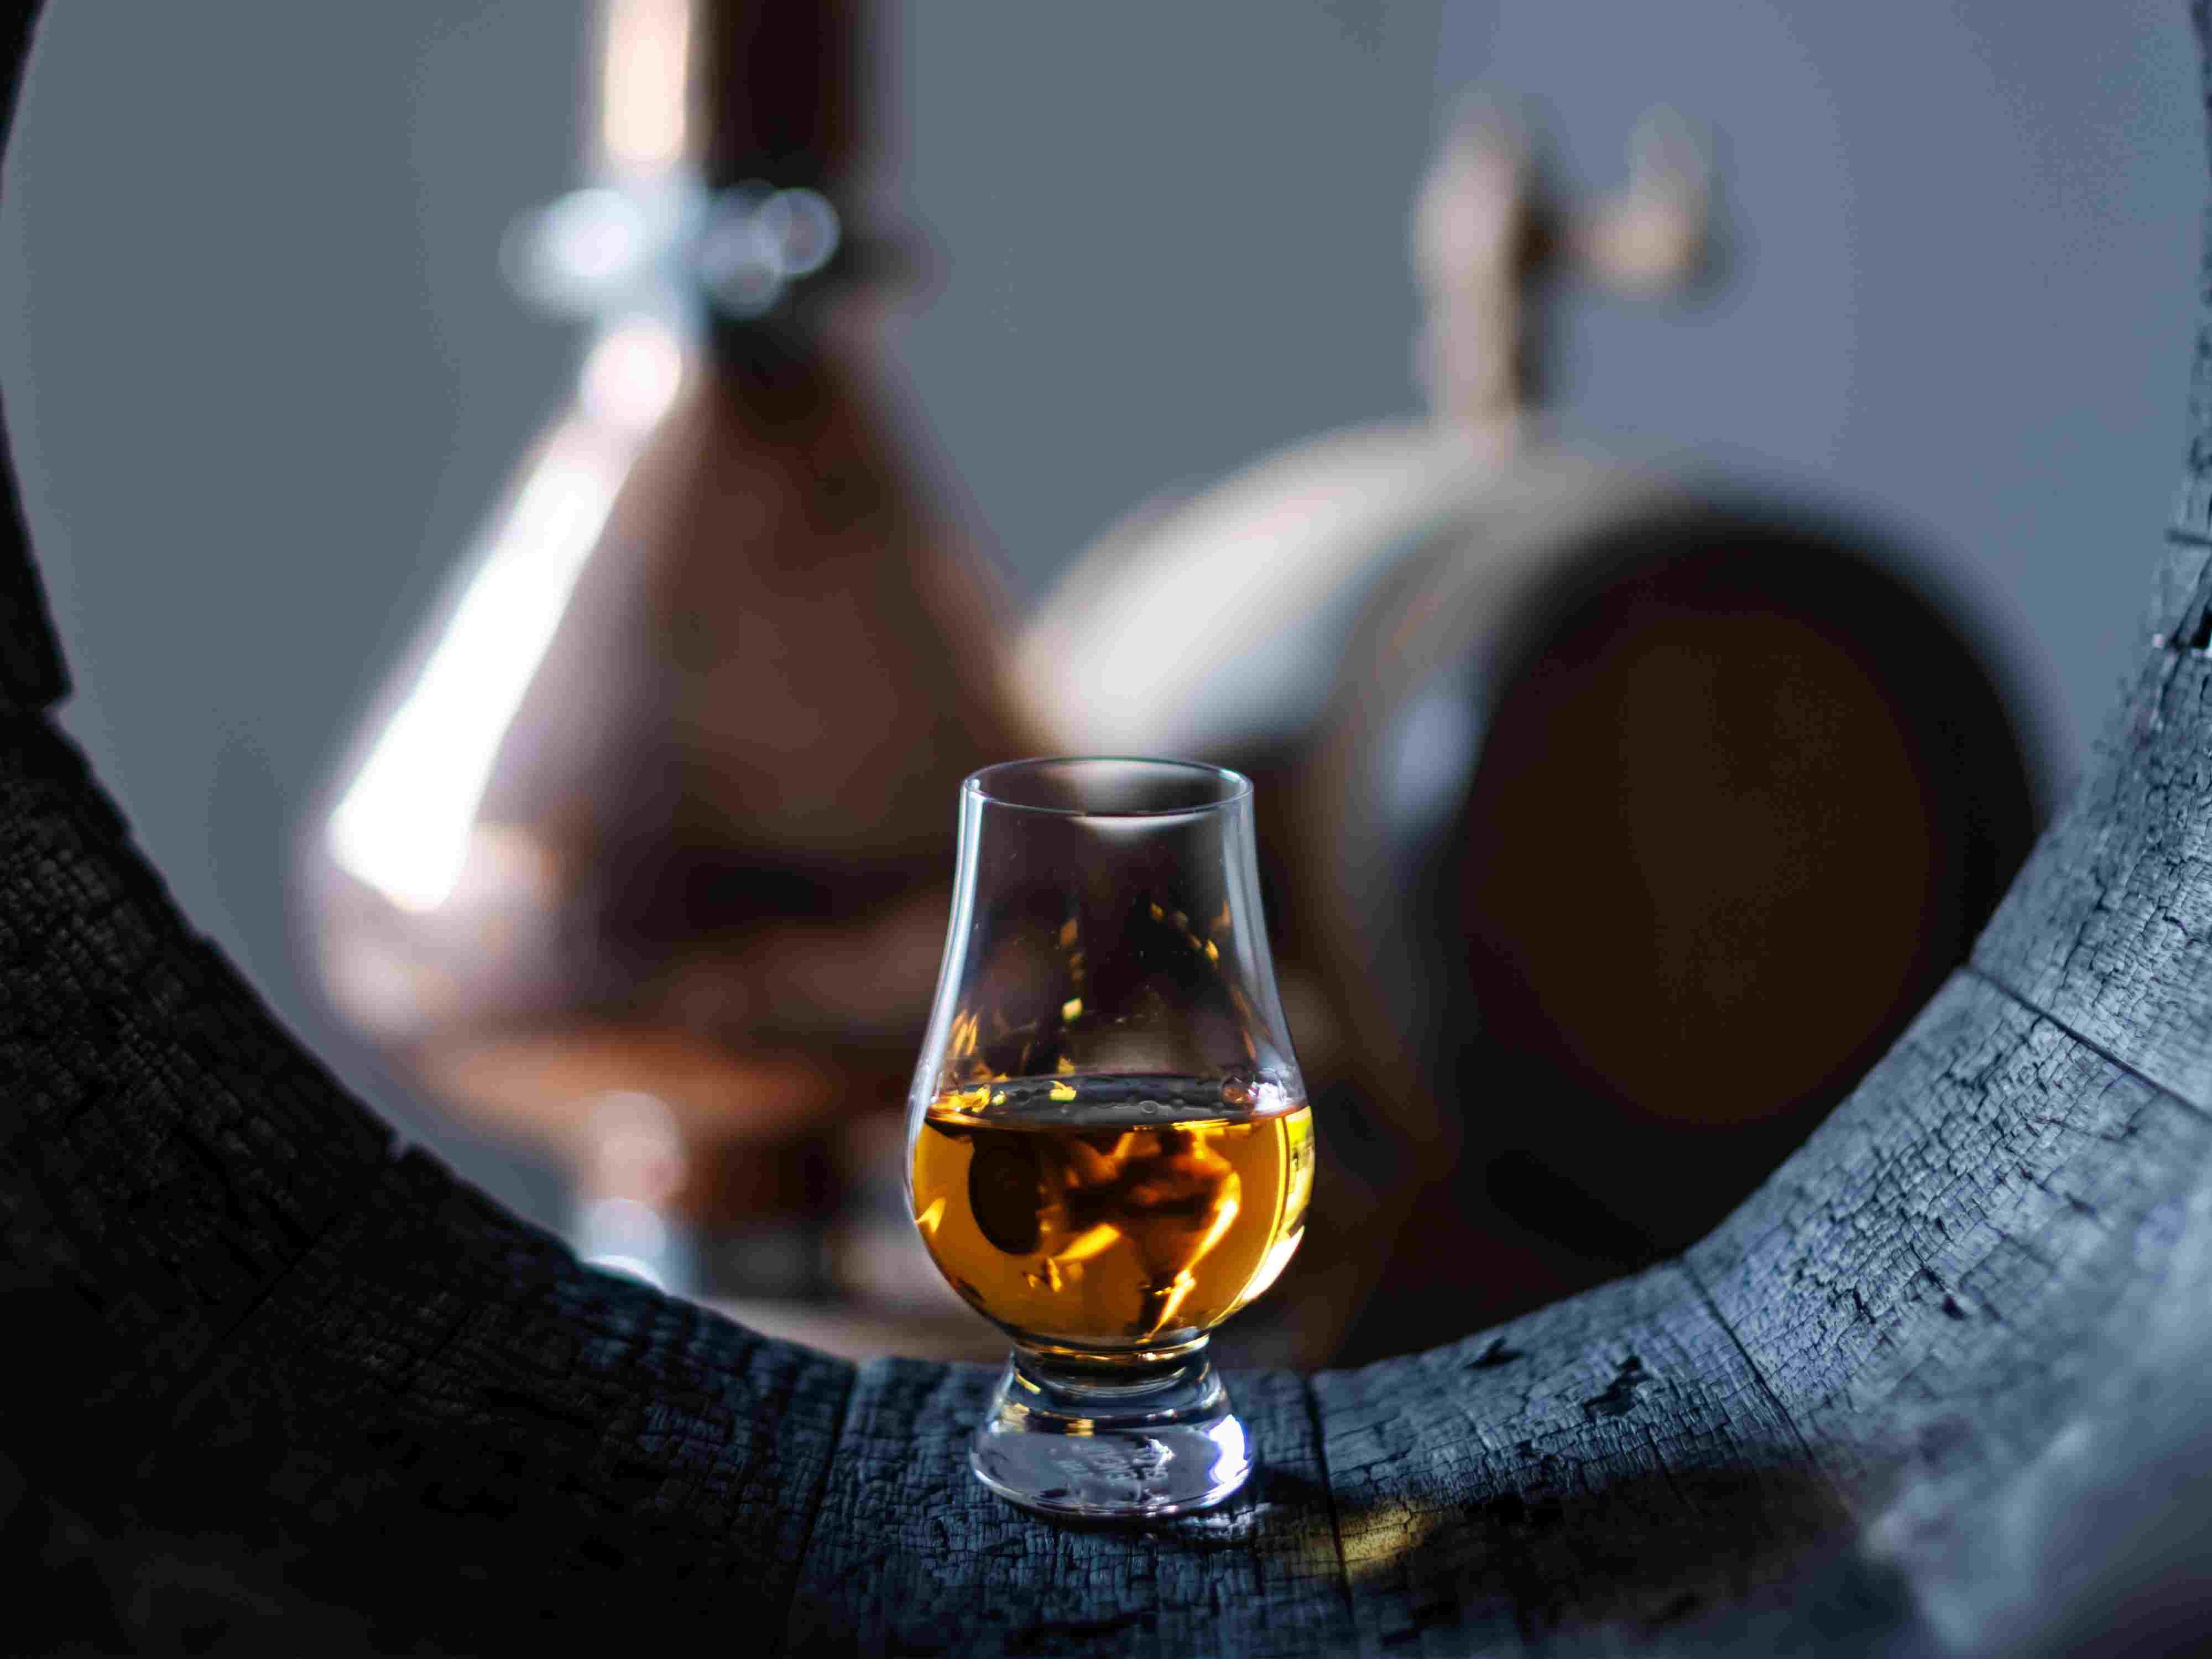 Die Wahl des richtigen Whiskyglases ist von großer Bedeutung, da verschiedene Gläser unterschiedliche Eigenschaften besitzen, die den Geschmack und das Aroma des Whiskys beeinflussen.